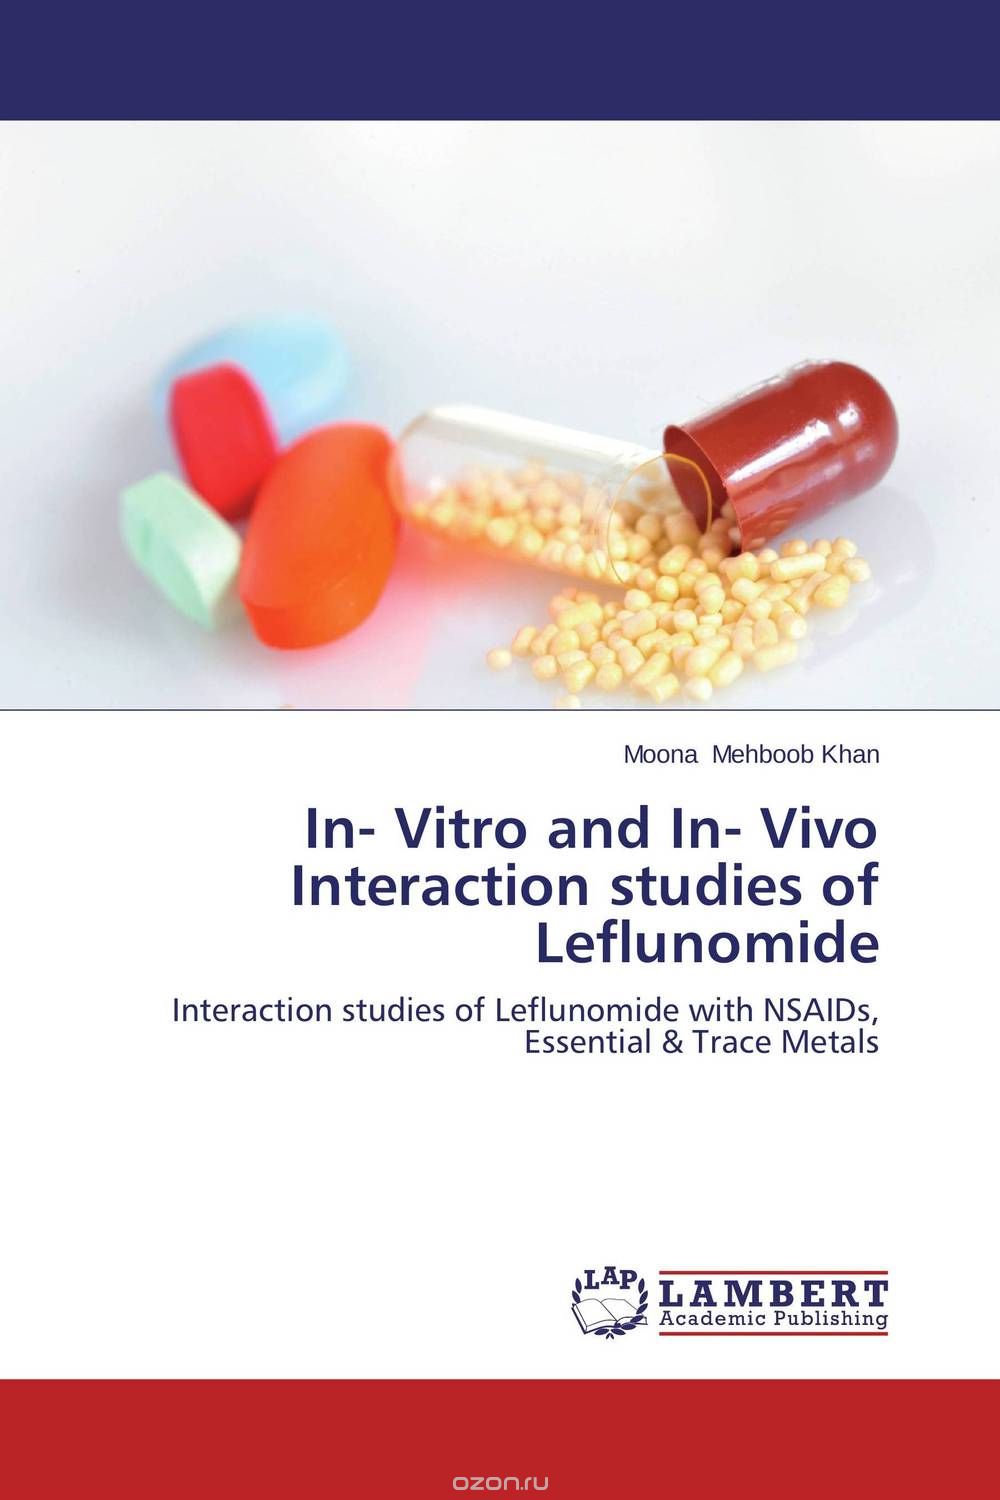 Скачать книгу "In- Vitro and In- Vivo Interaction studies of Leflunomide"